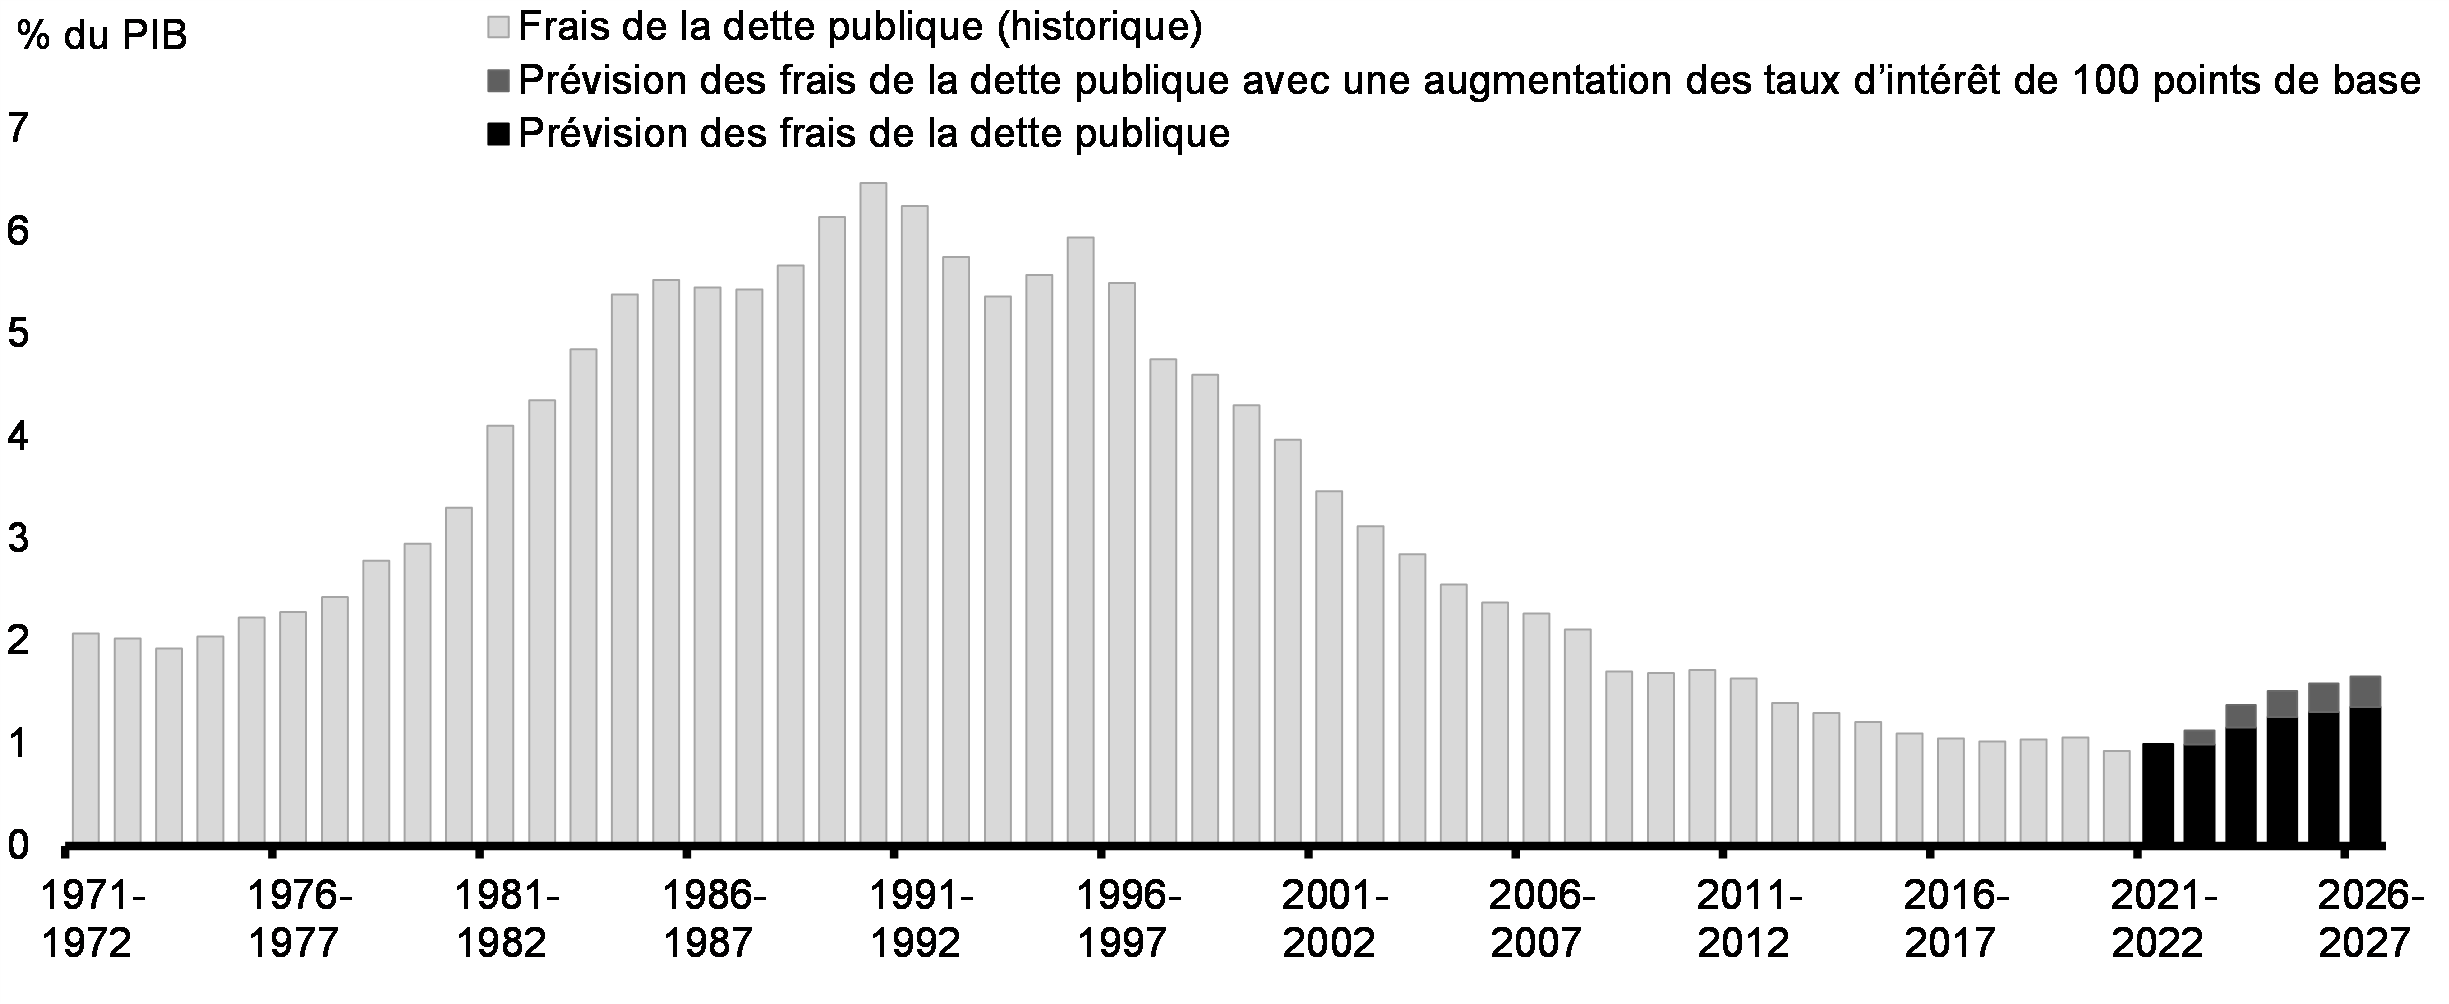 Graphique 27 : Frais de la dette publique historiques en proportion du PIB et sensibilité projetée à une augmentation de 100 points de base des taux d’intérêt